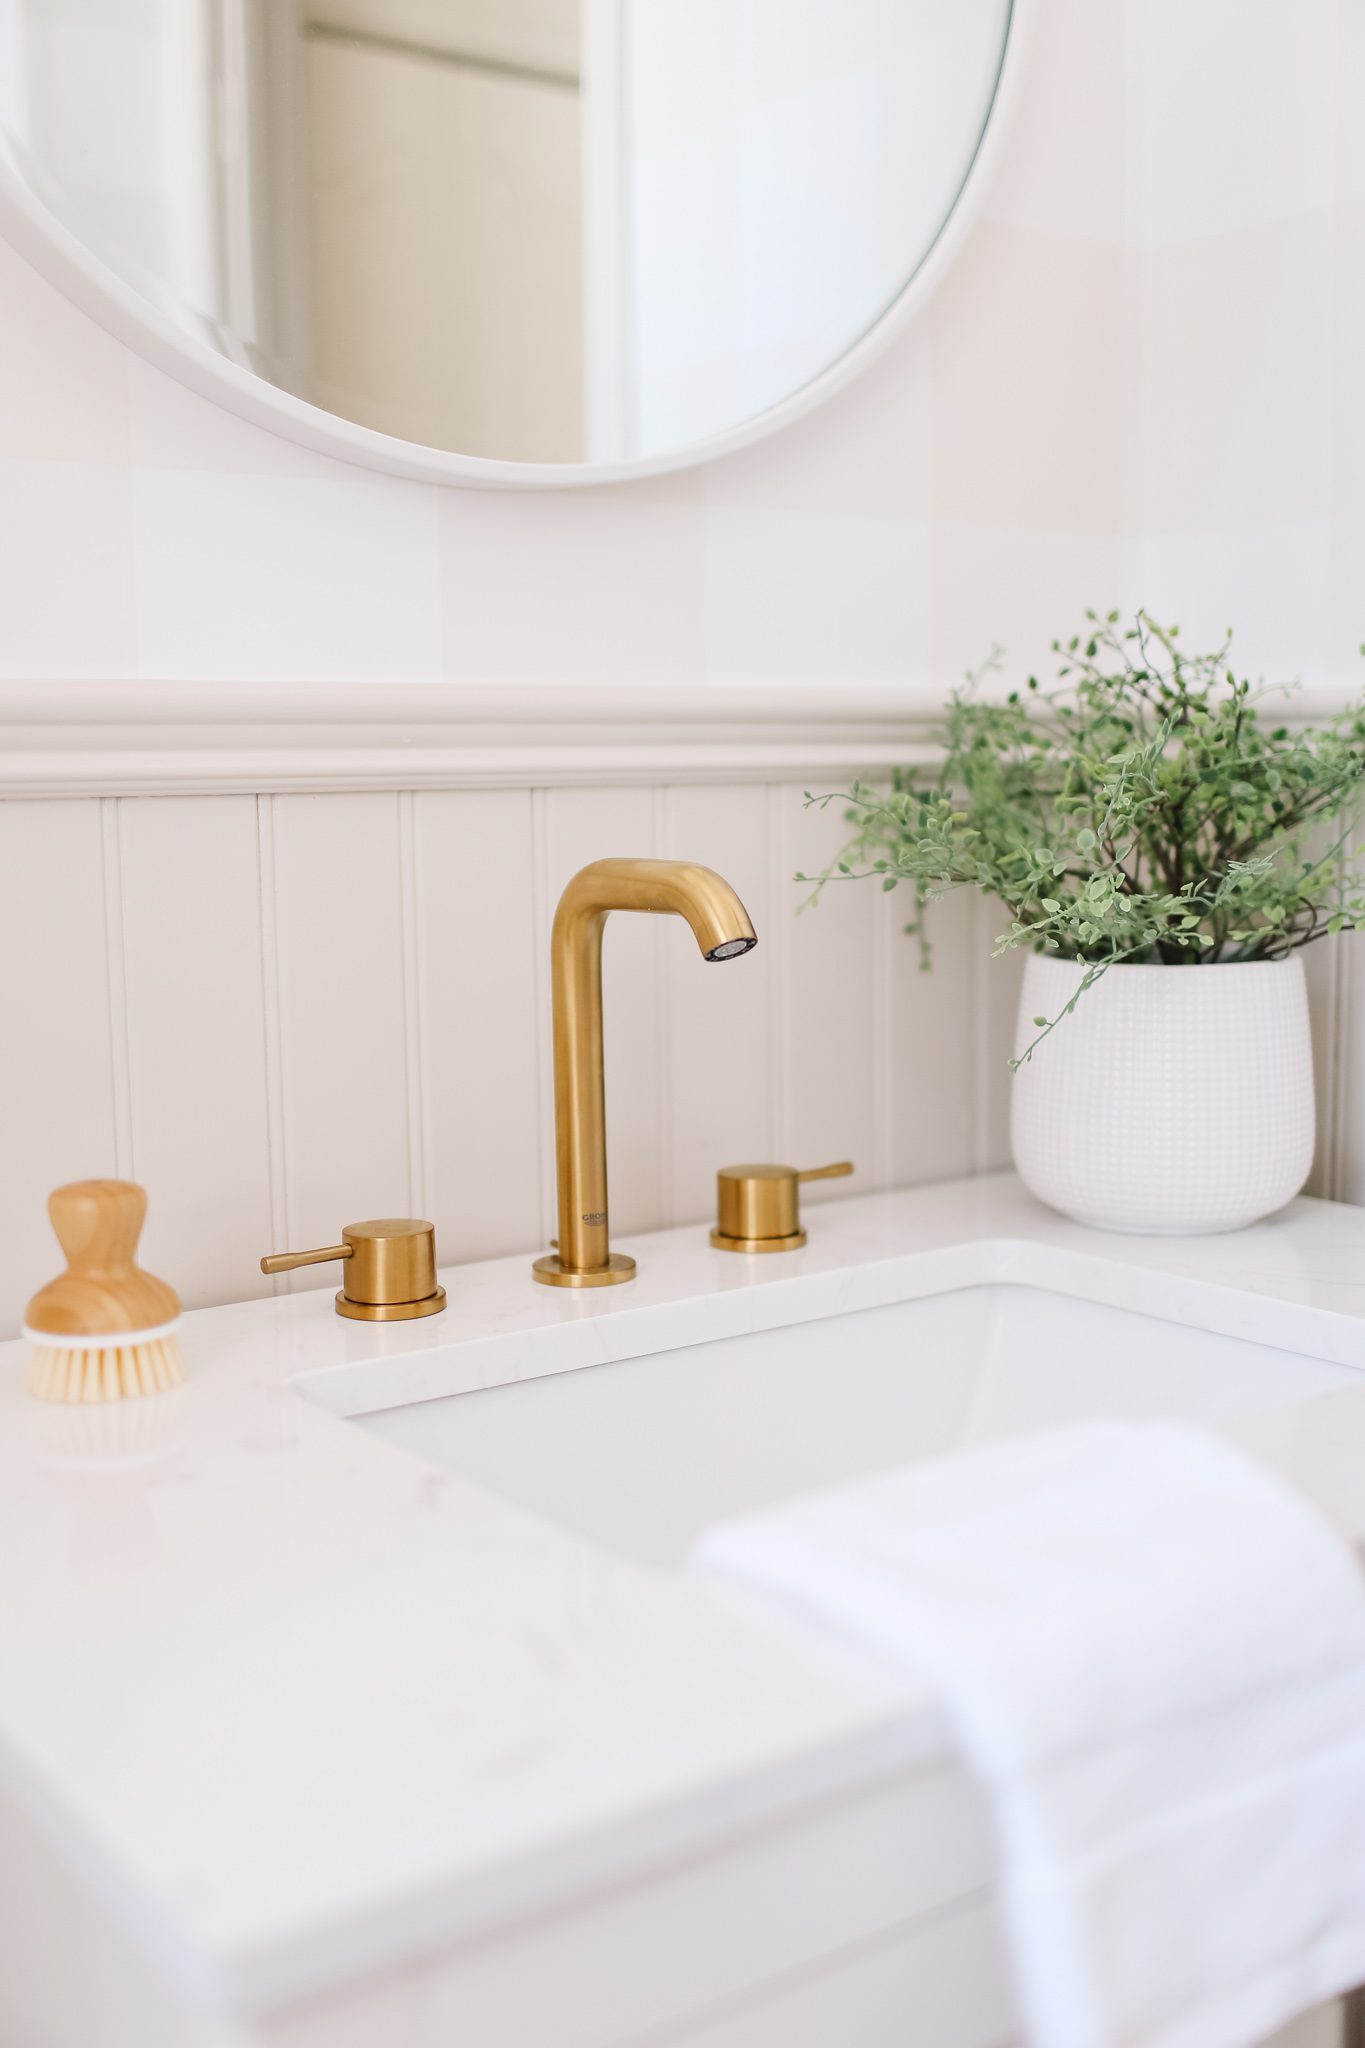 A gold bathroom faucet